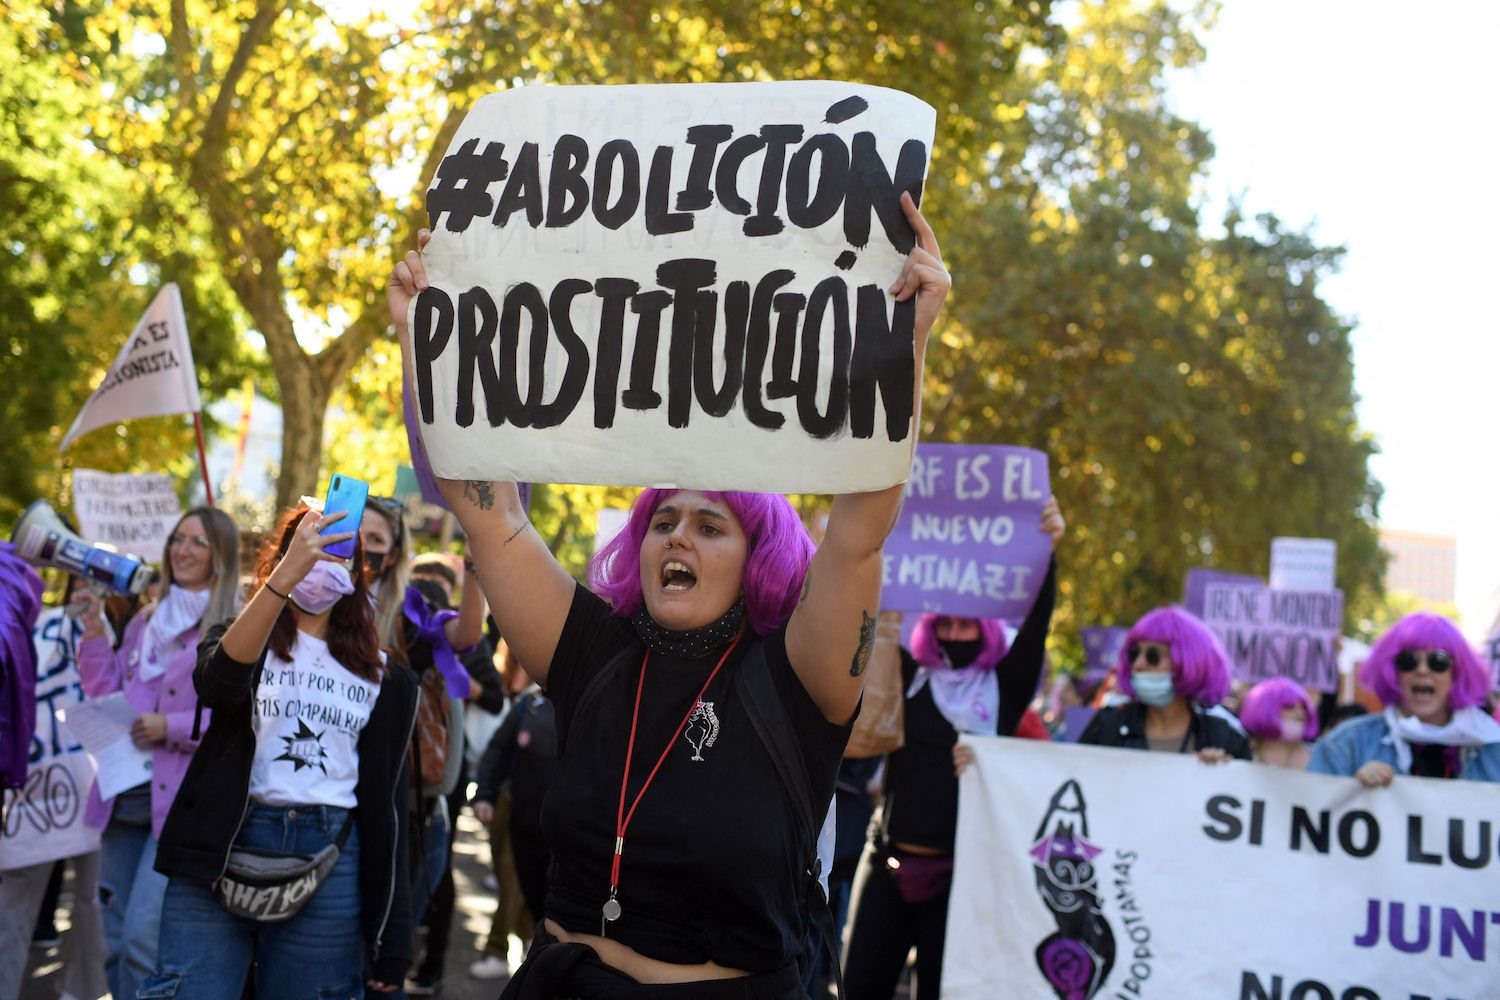 Một phụ nữ giơ tấm biển yêu cầu xóa bỏ mại dâm trong cuộc biểu tình ở Madrid vào ngày 23/10/2021. Ảnh: Getty Images